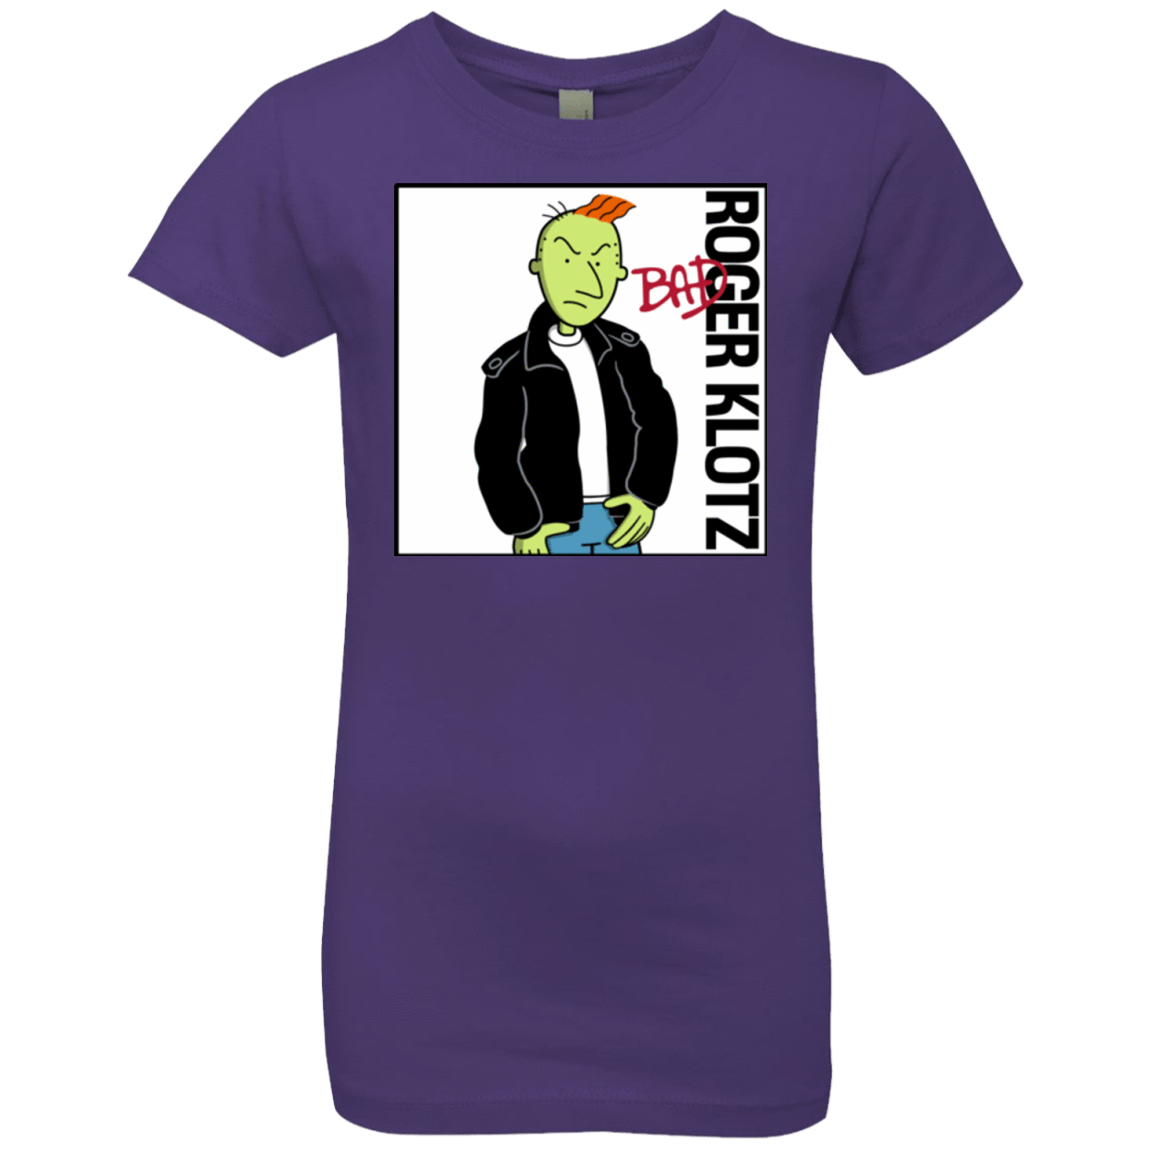 T-Shirts Purple Rush / YXS BAD Girls Premium T-Shirt